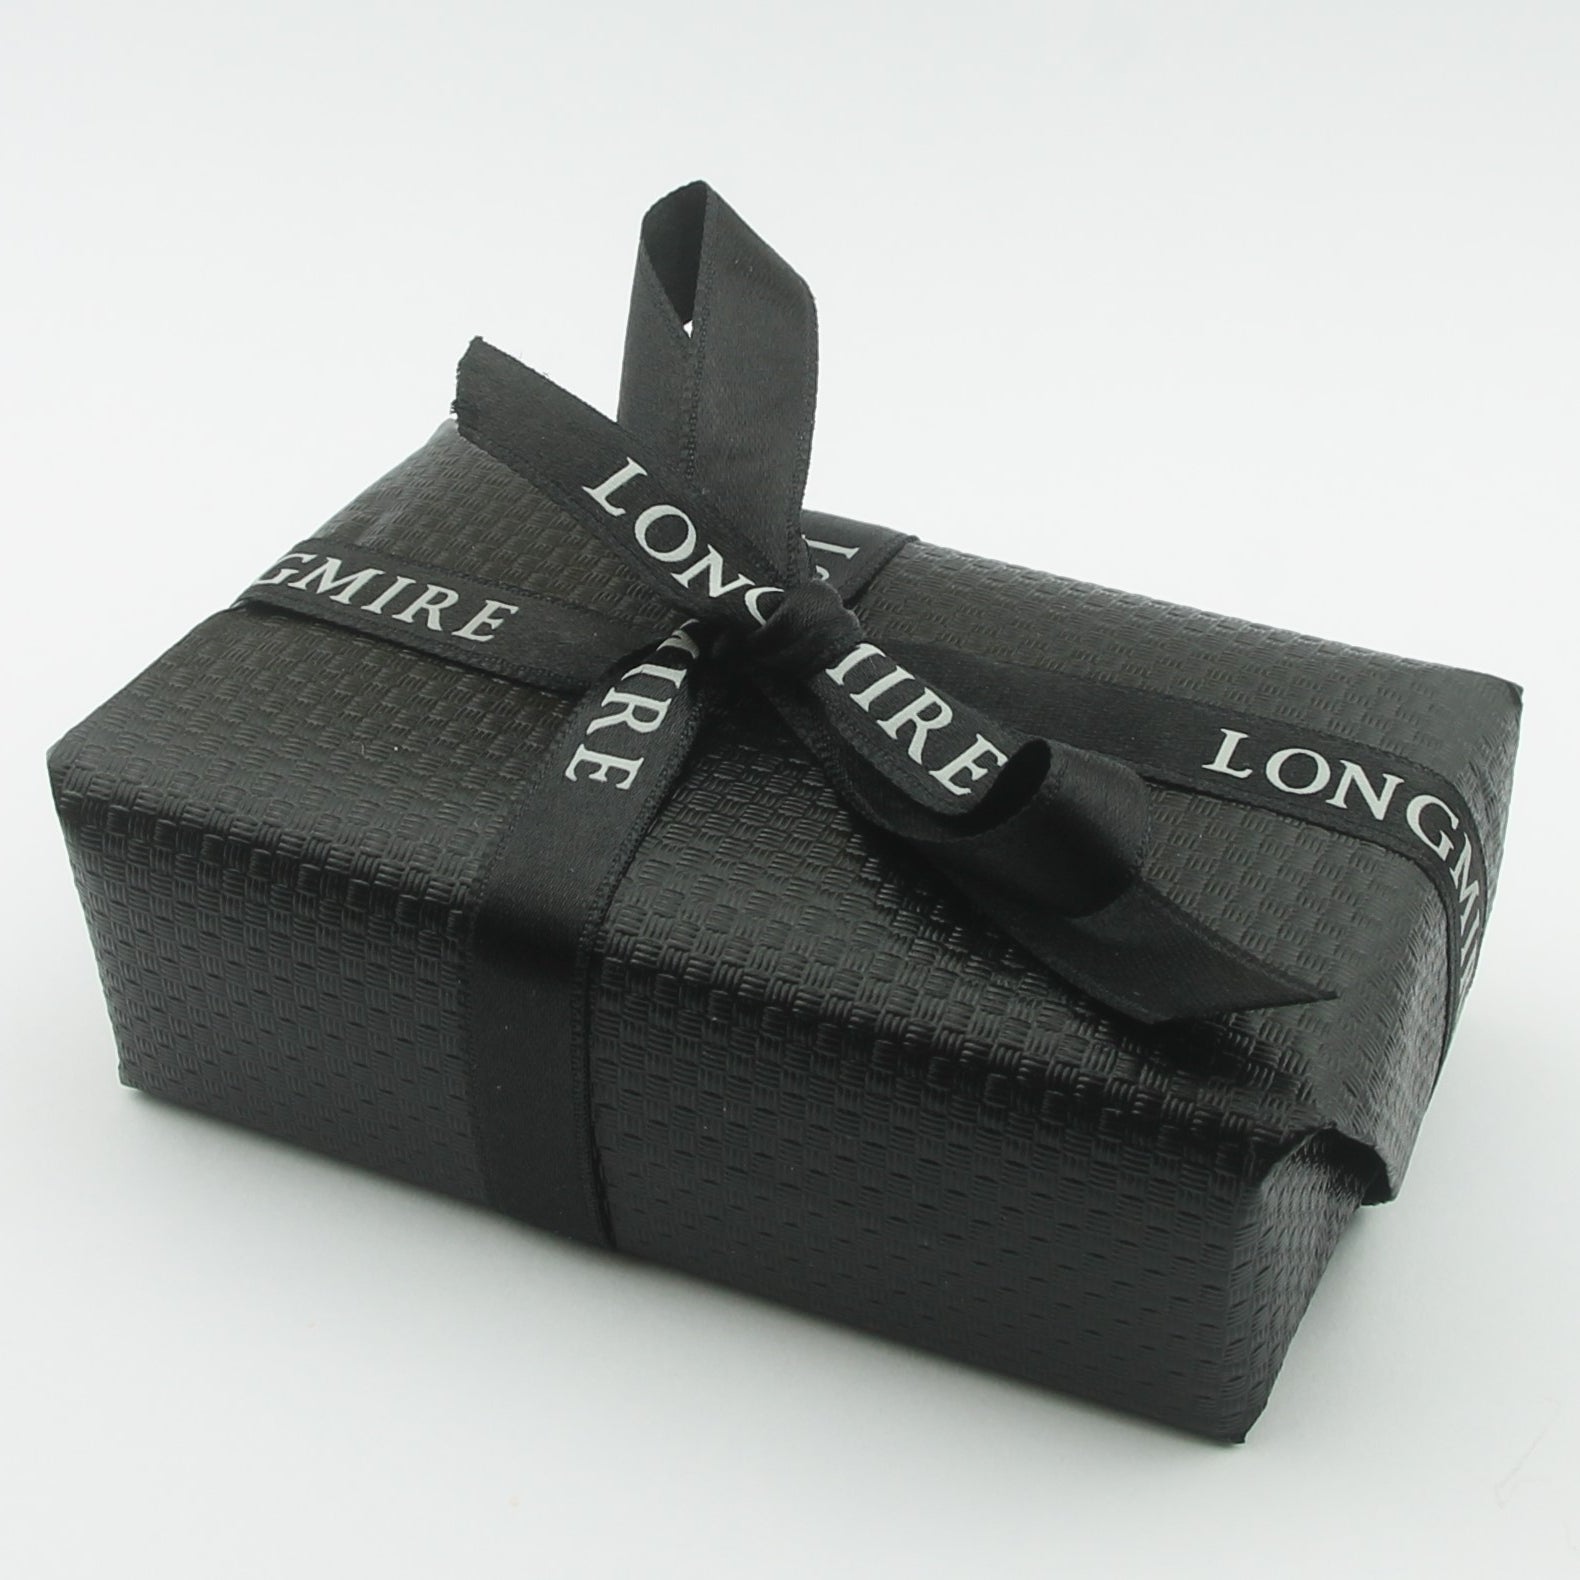 Longmire cufflinks gift wrapped